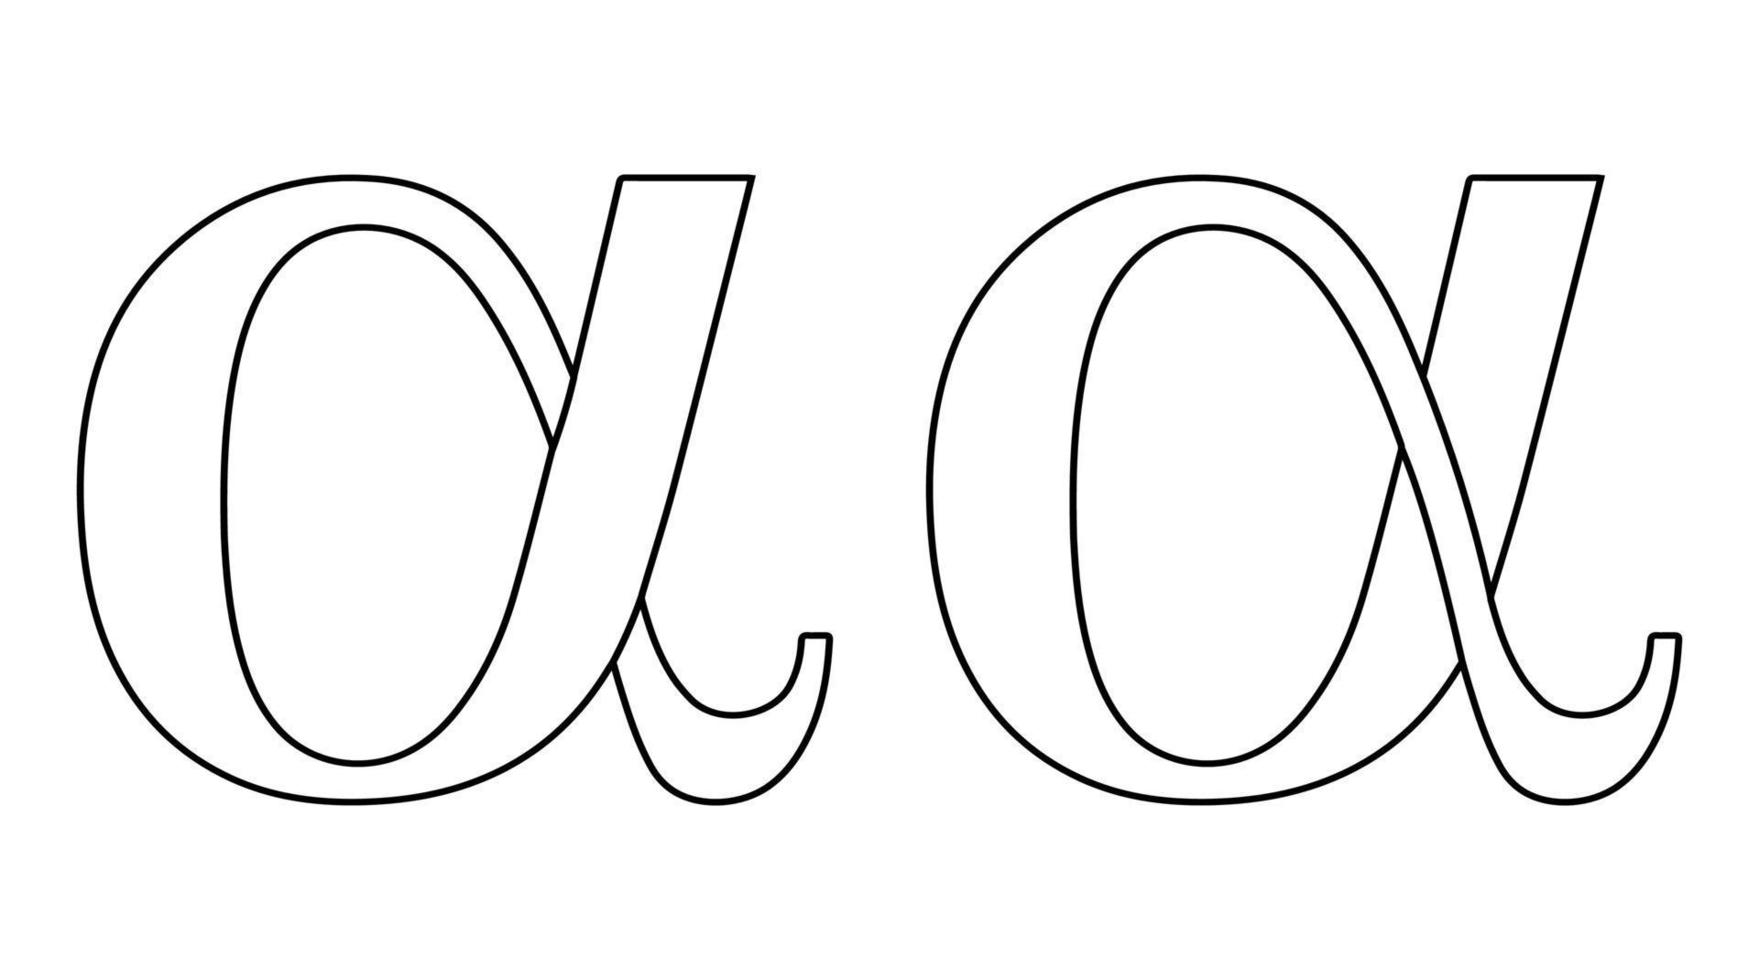 Alpha symbol, icon greek sign, letter design logo vector